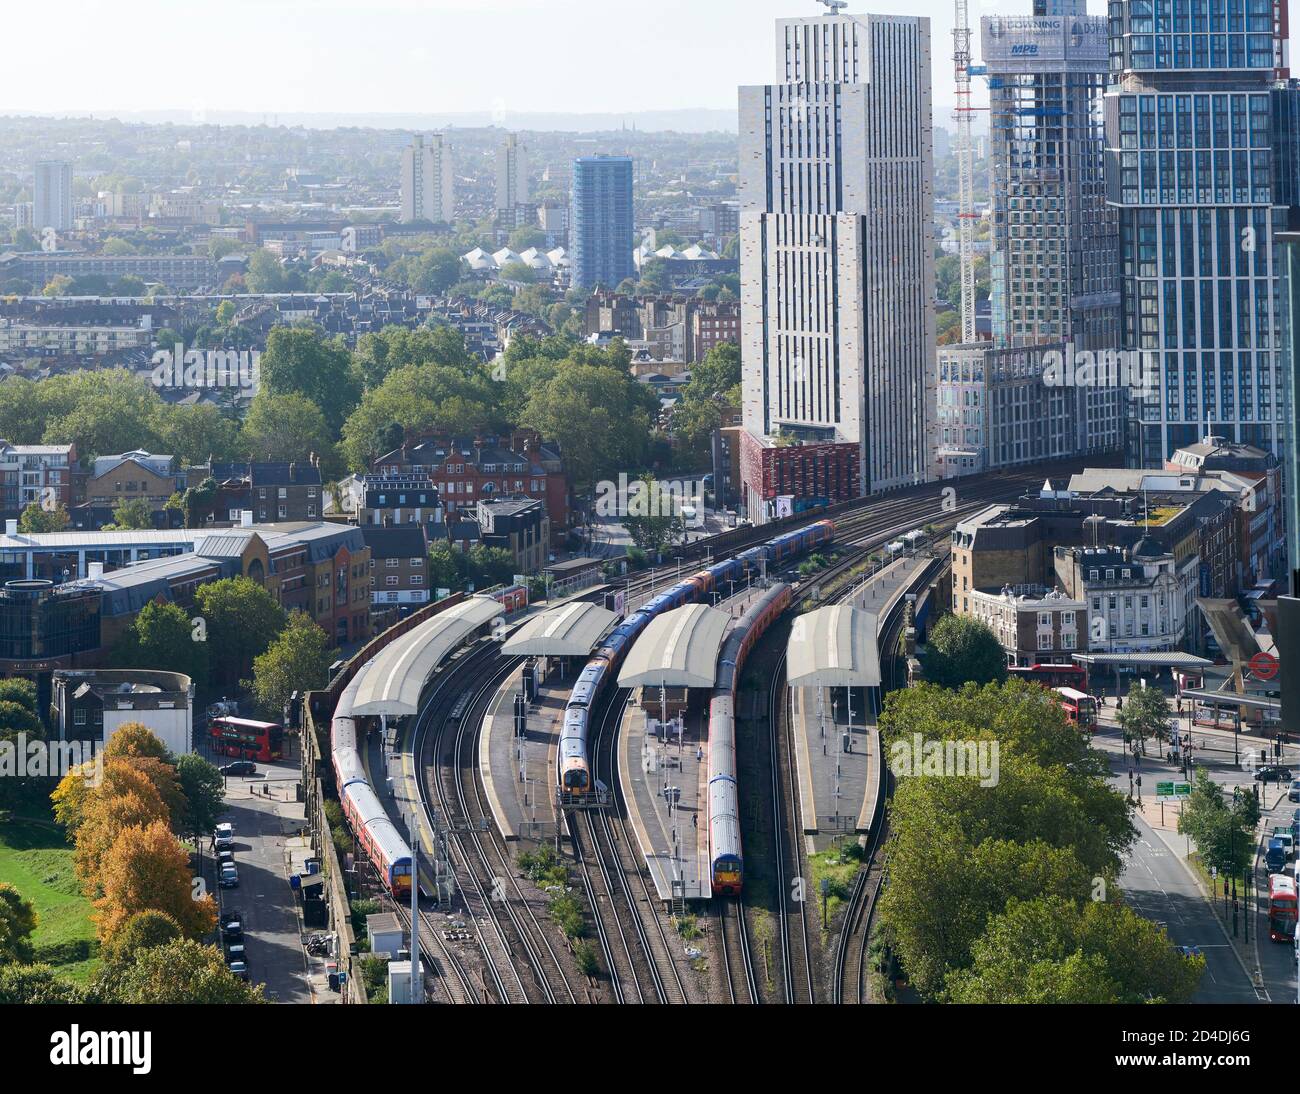 Vue de haut niveau de la gare de Vauxhall, sud-ouest de Londres, Royaume-Uni Banque D'Images